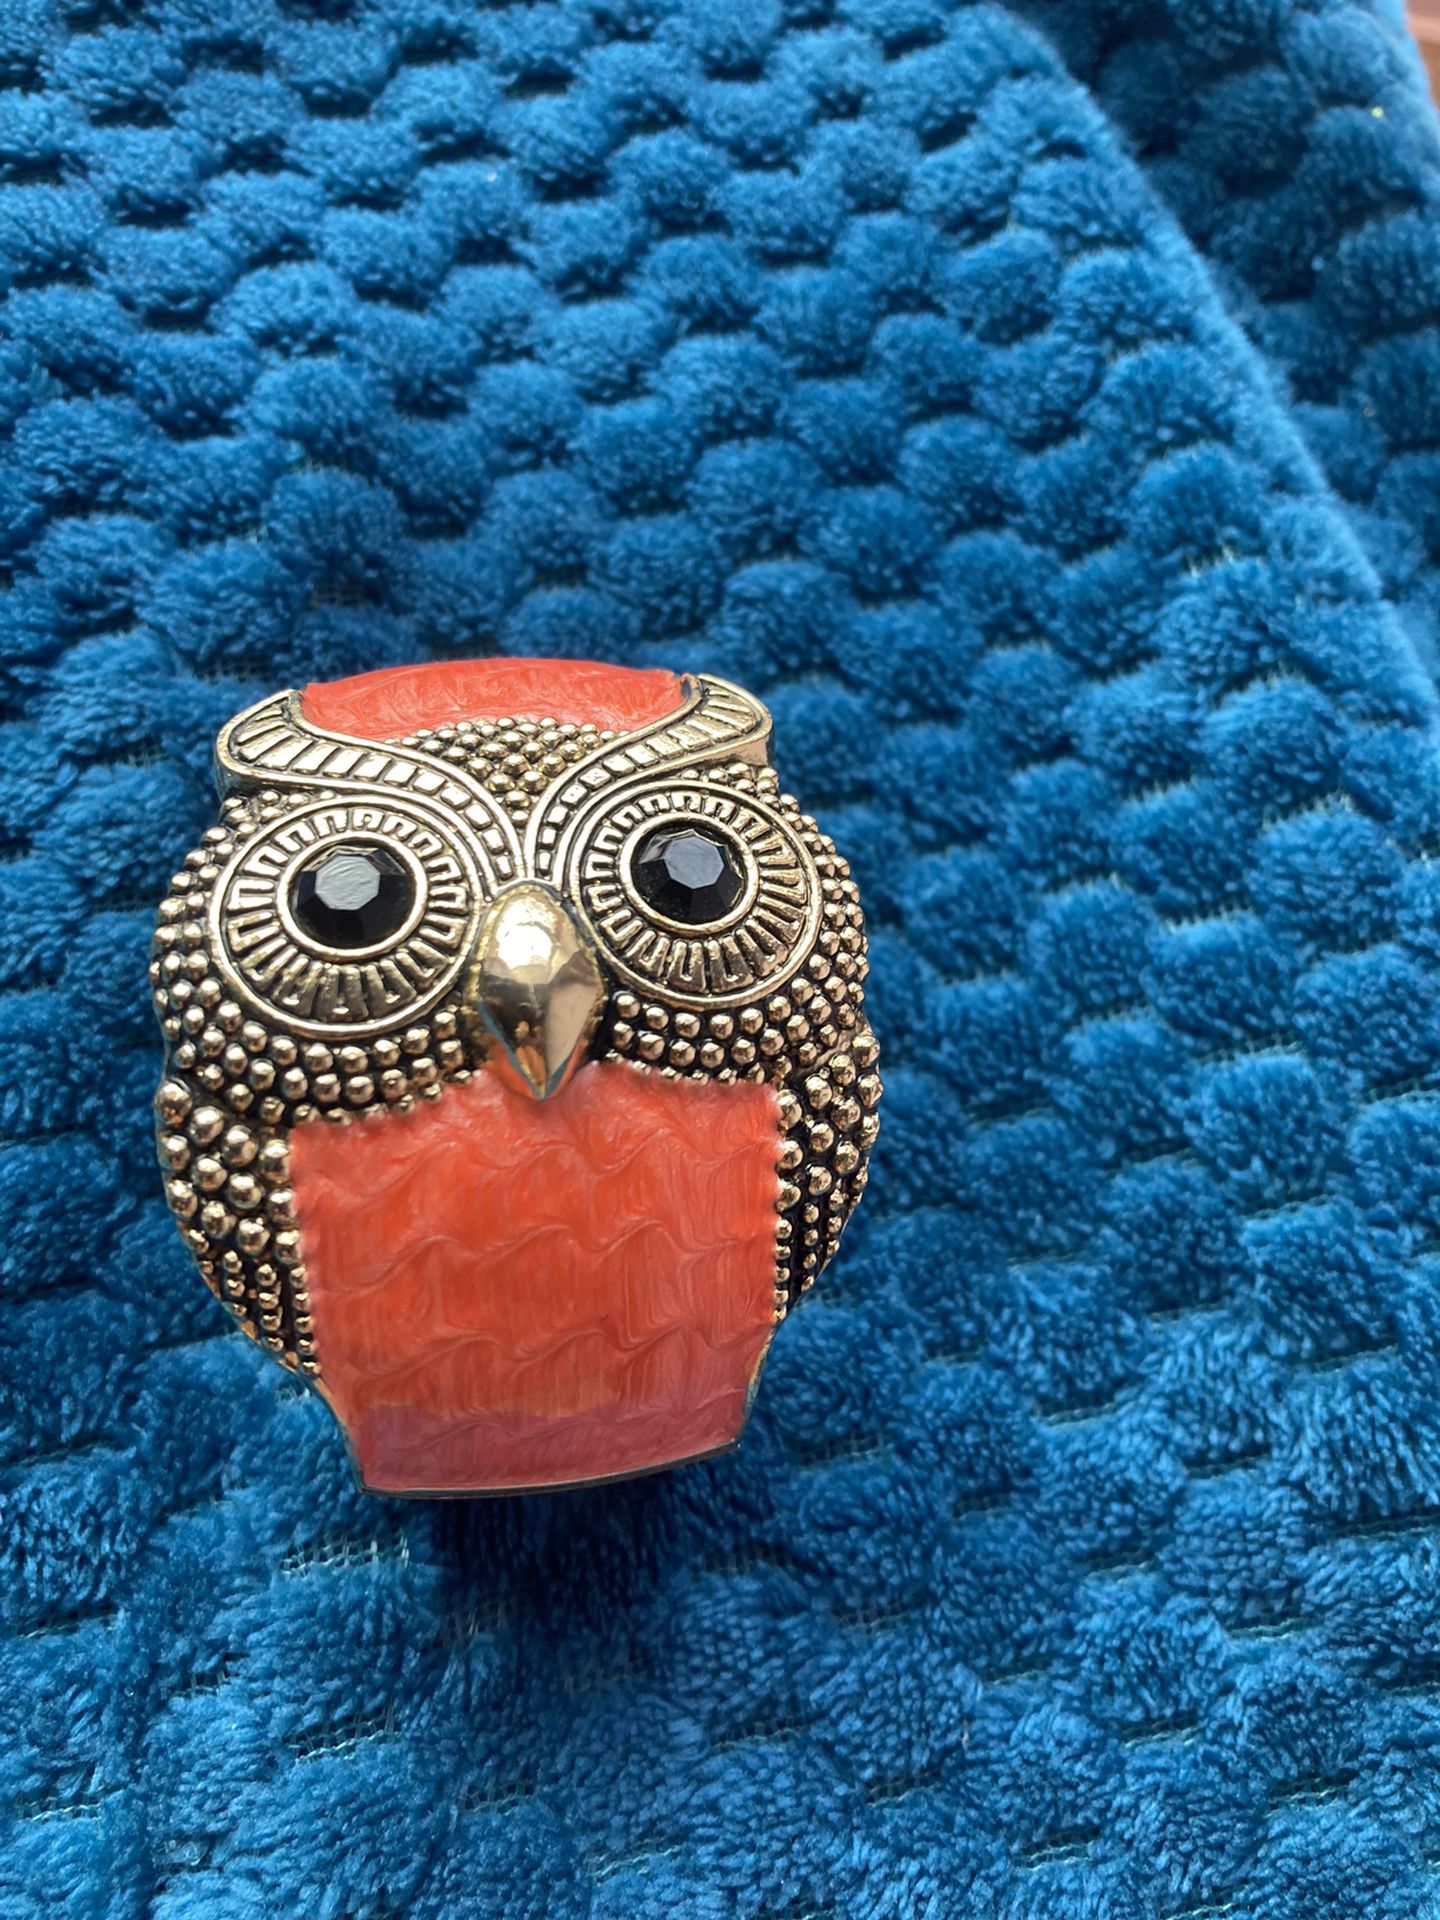 VTG Owl Bracelet 